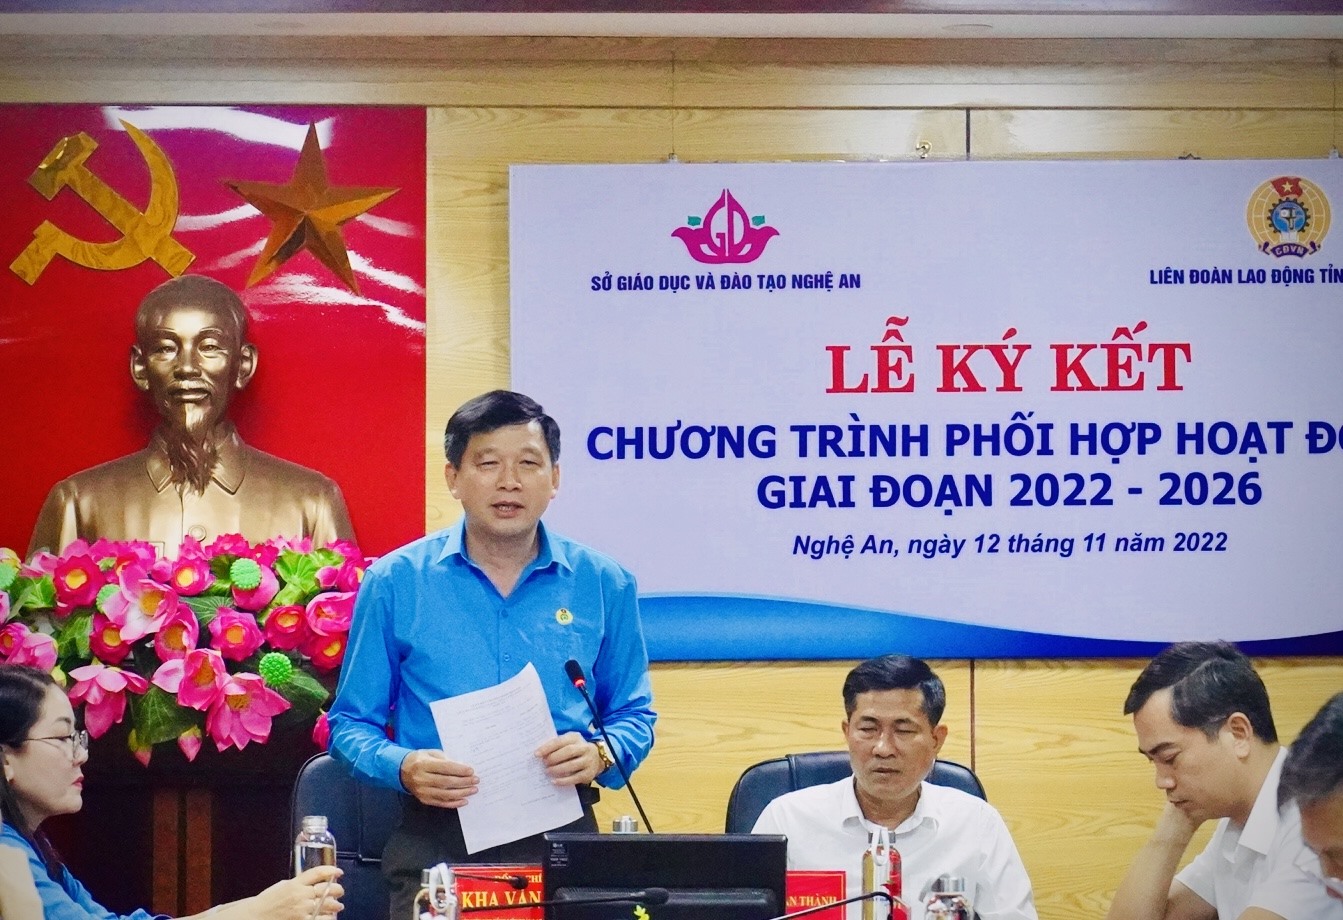 Ông Kha Văn Tám - Chủ tịch liên đoàn lao động tỉnh Nghệ An phát biểu kết luận buổi lễ. Ảnh: Quỳnh Trang